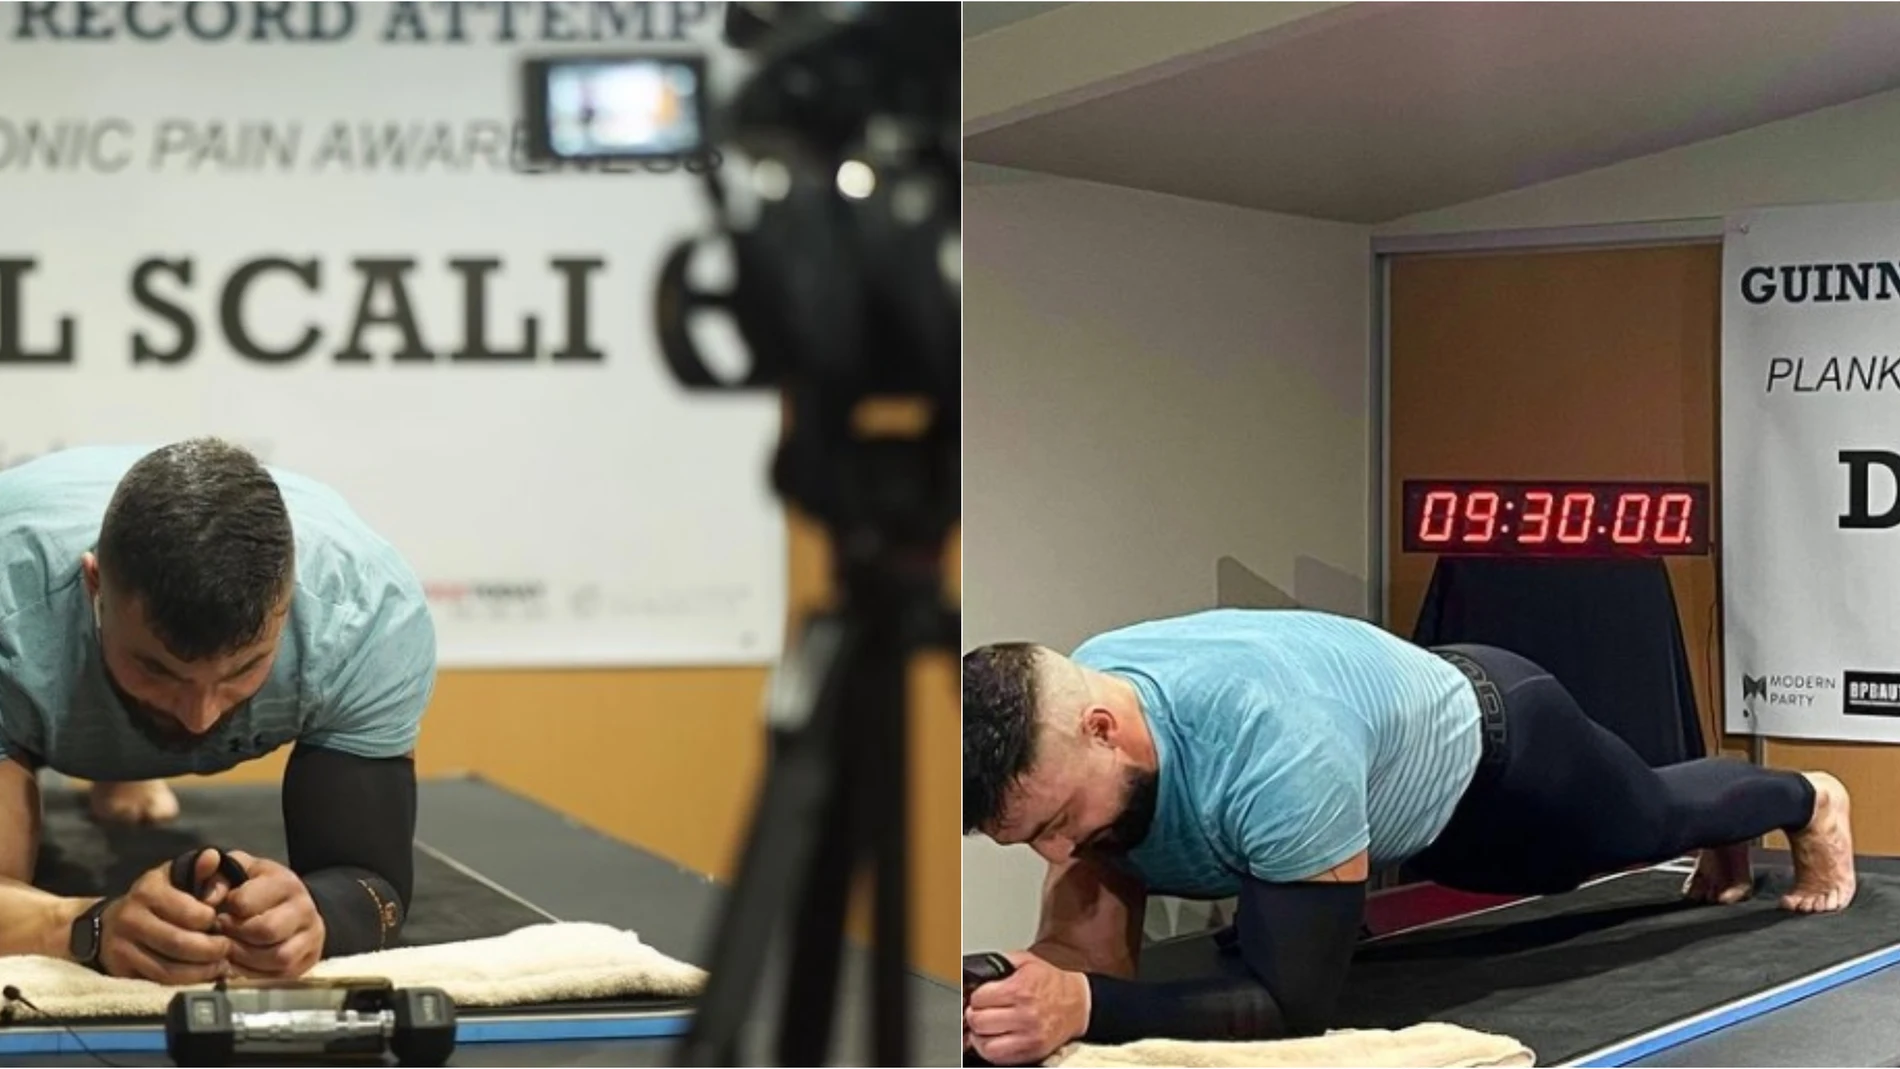 Daniel Scali estable un nuevo récord tras pasar 9 horas y 30 minutos haciendo una plancha abdominal